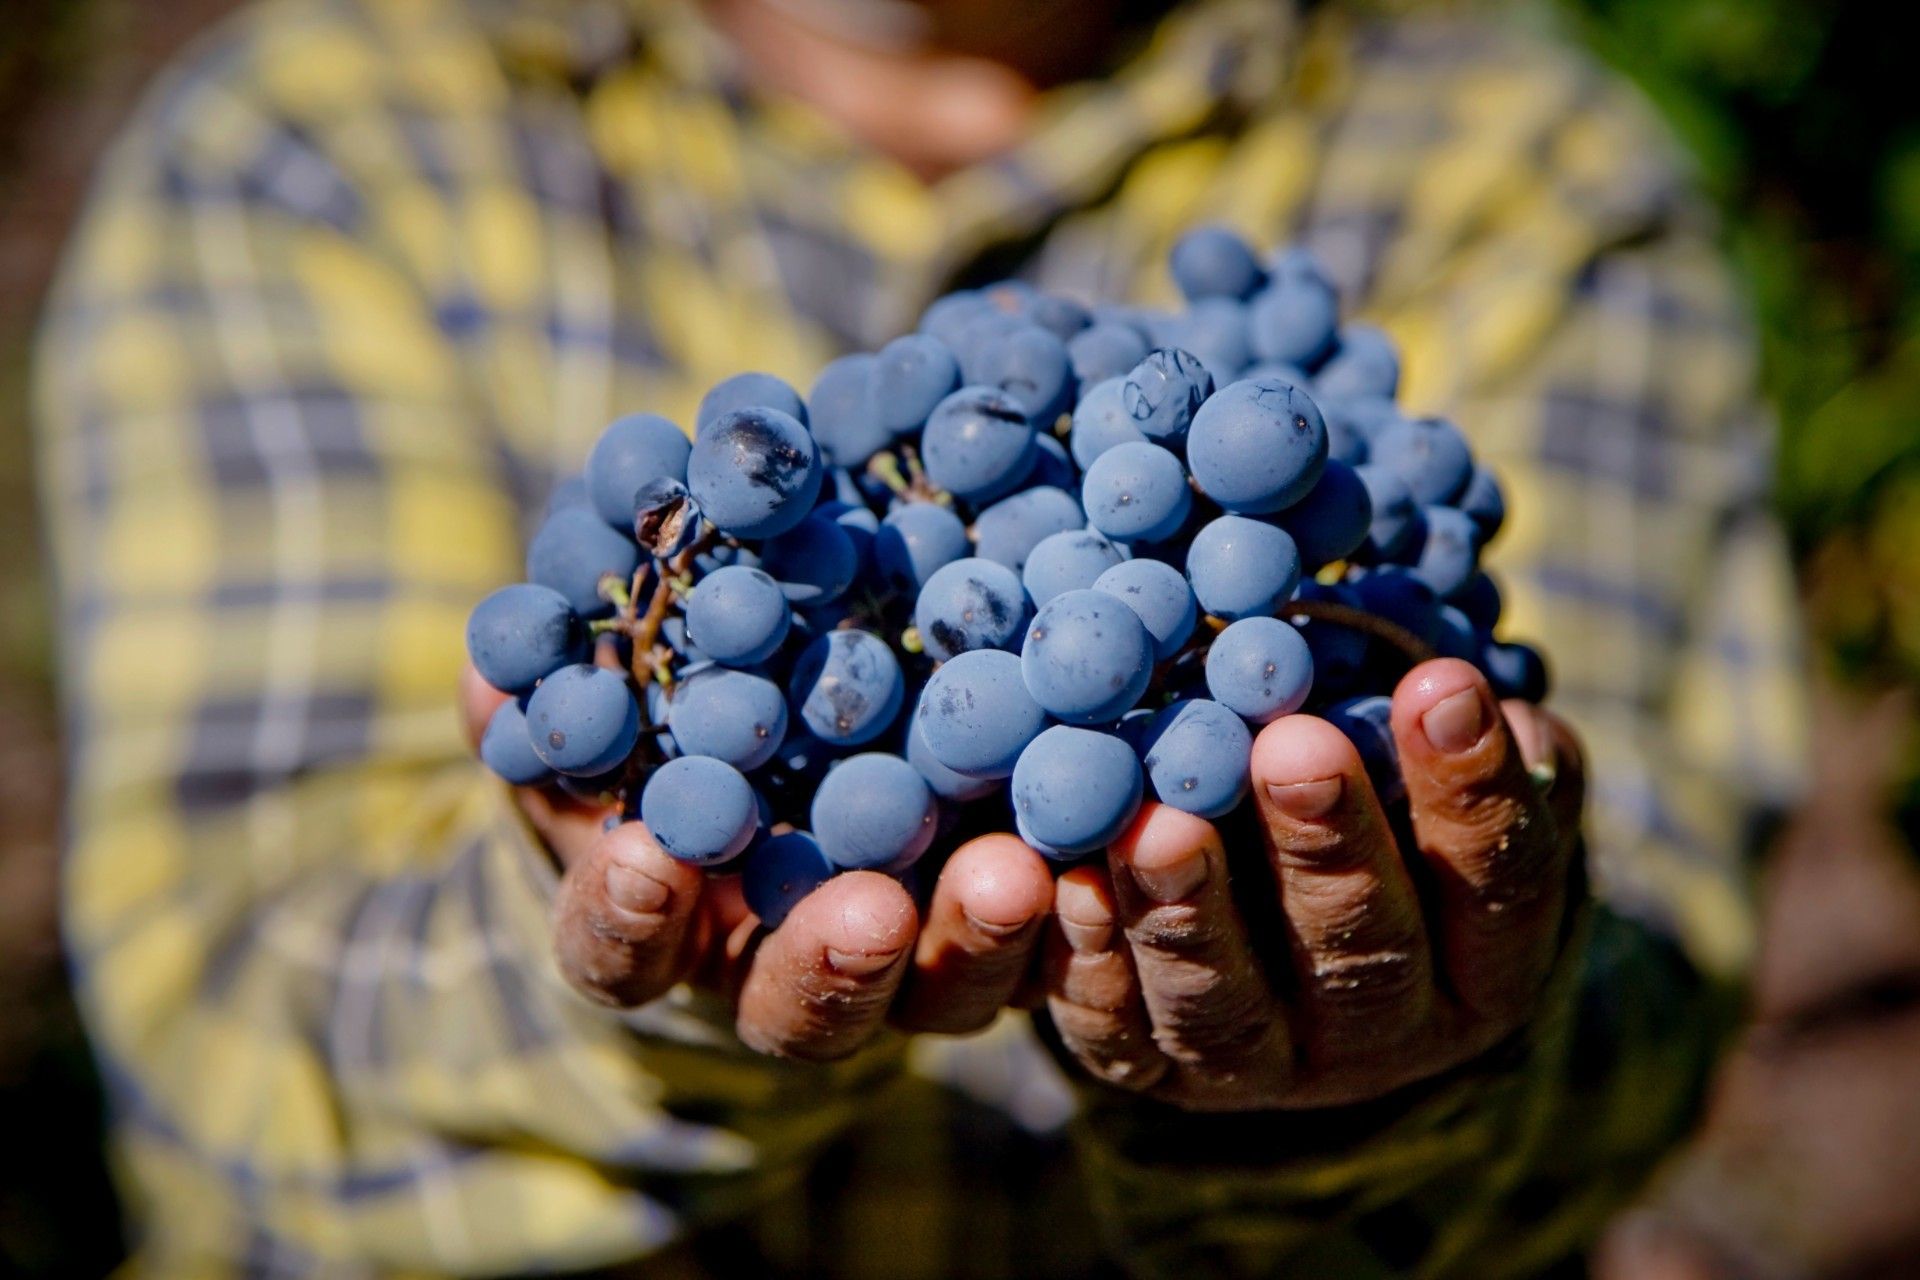 mani tengono in mano grappolo di uva di Montepulciano D'Abruzzo della Tenuta Trium di Notaresco a Teramo in Abruzzo